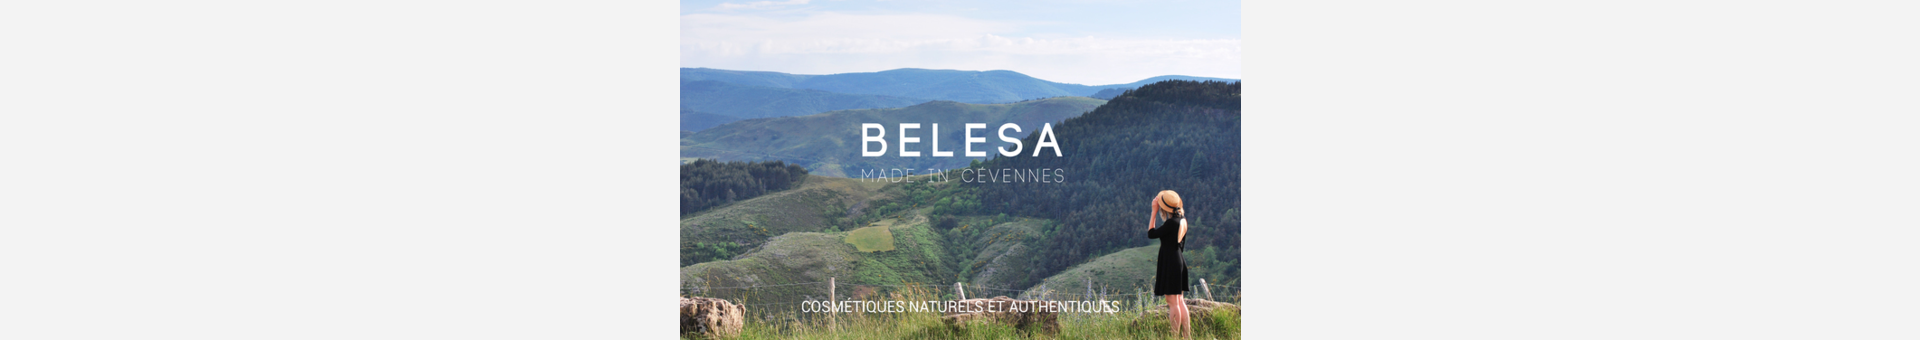 Belesa une gamme 100% occitane